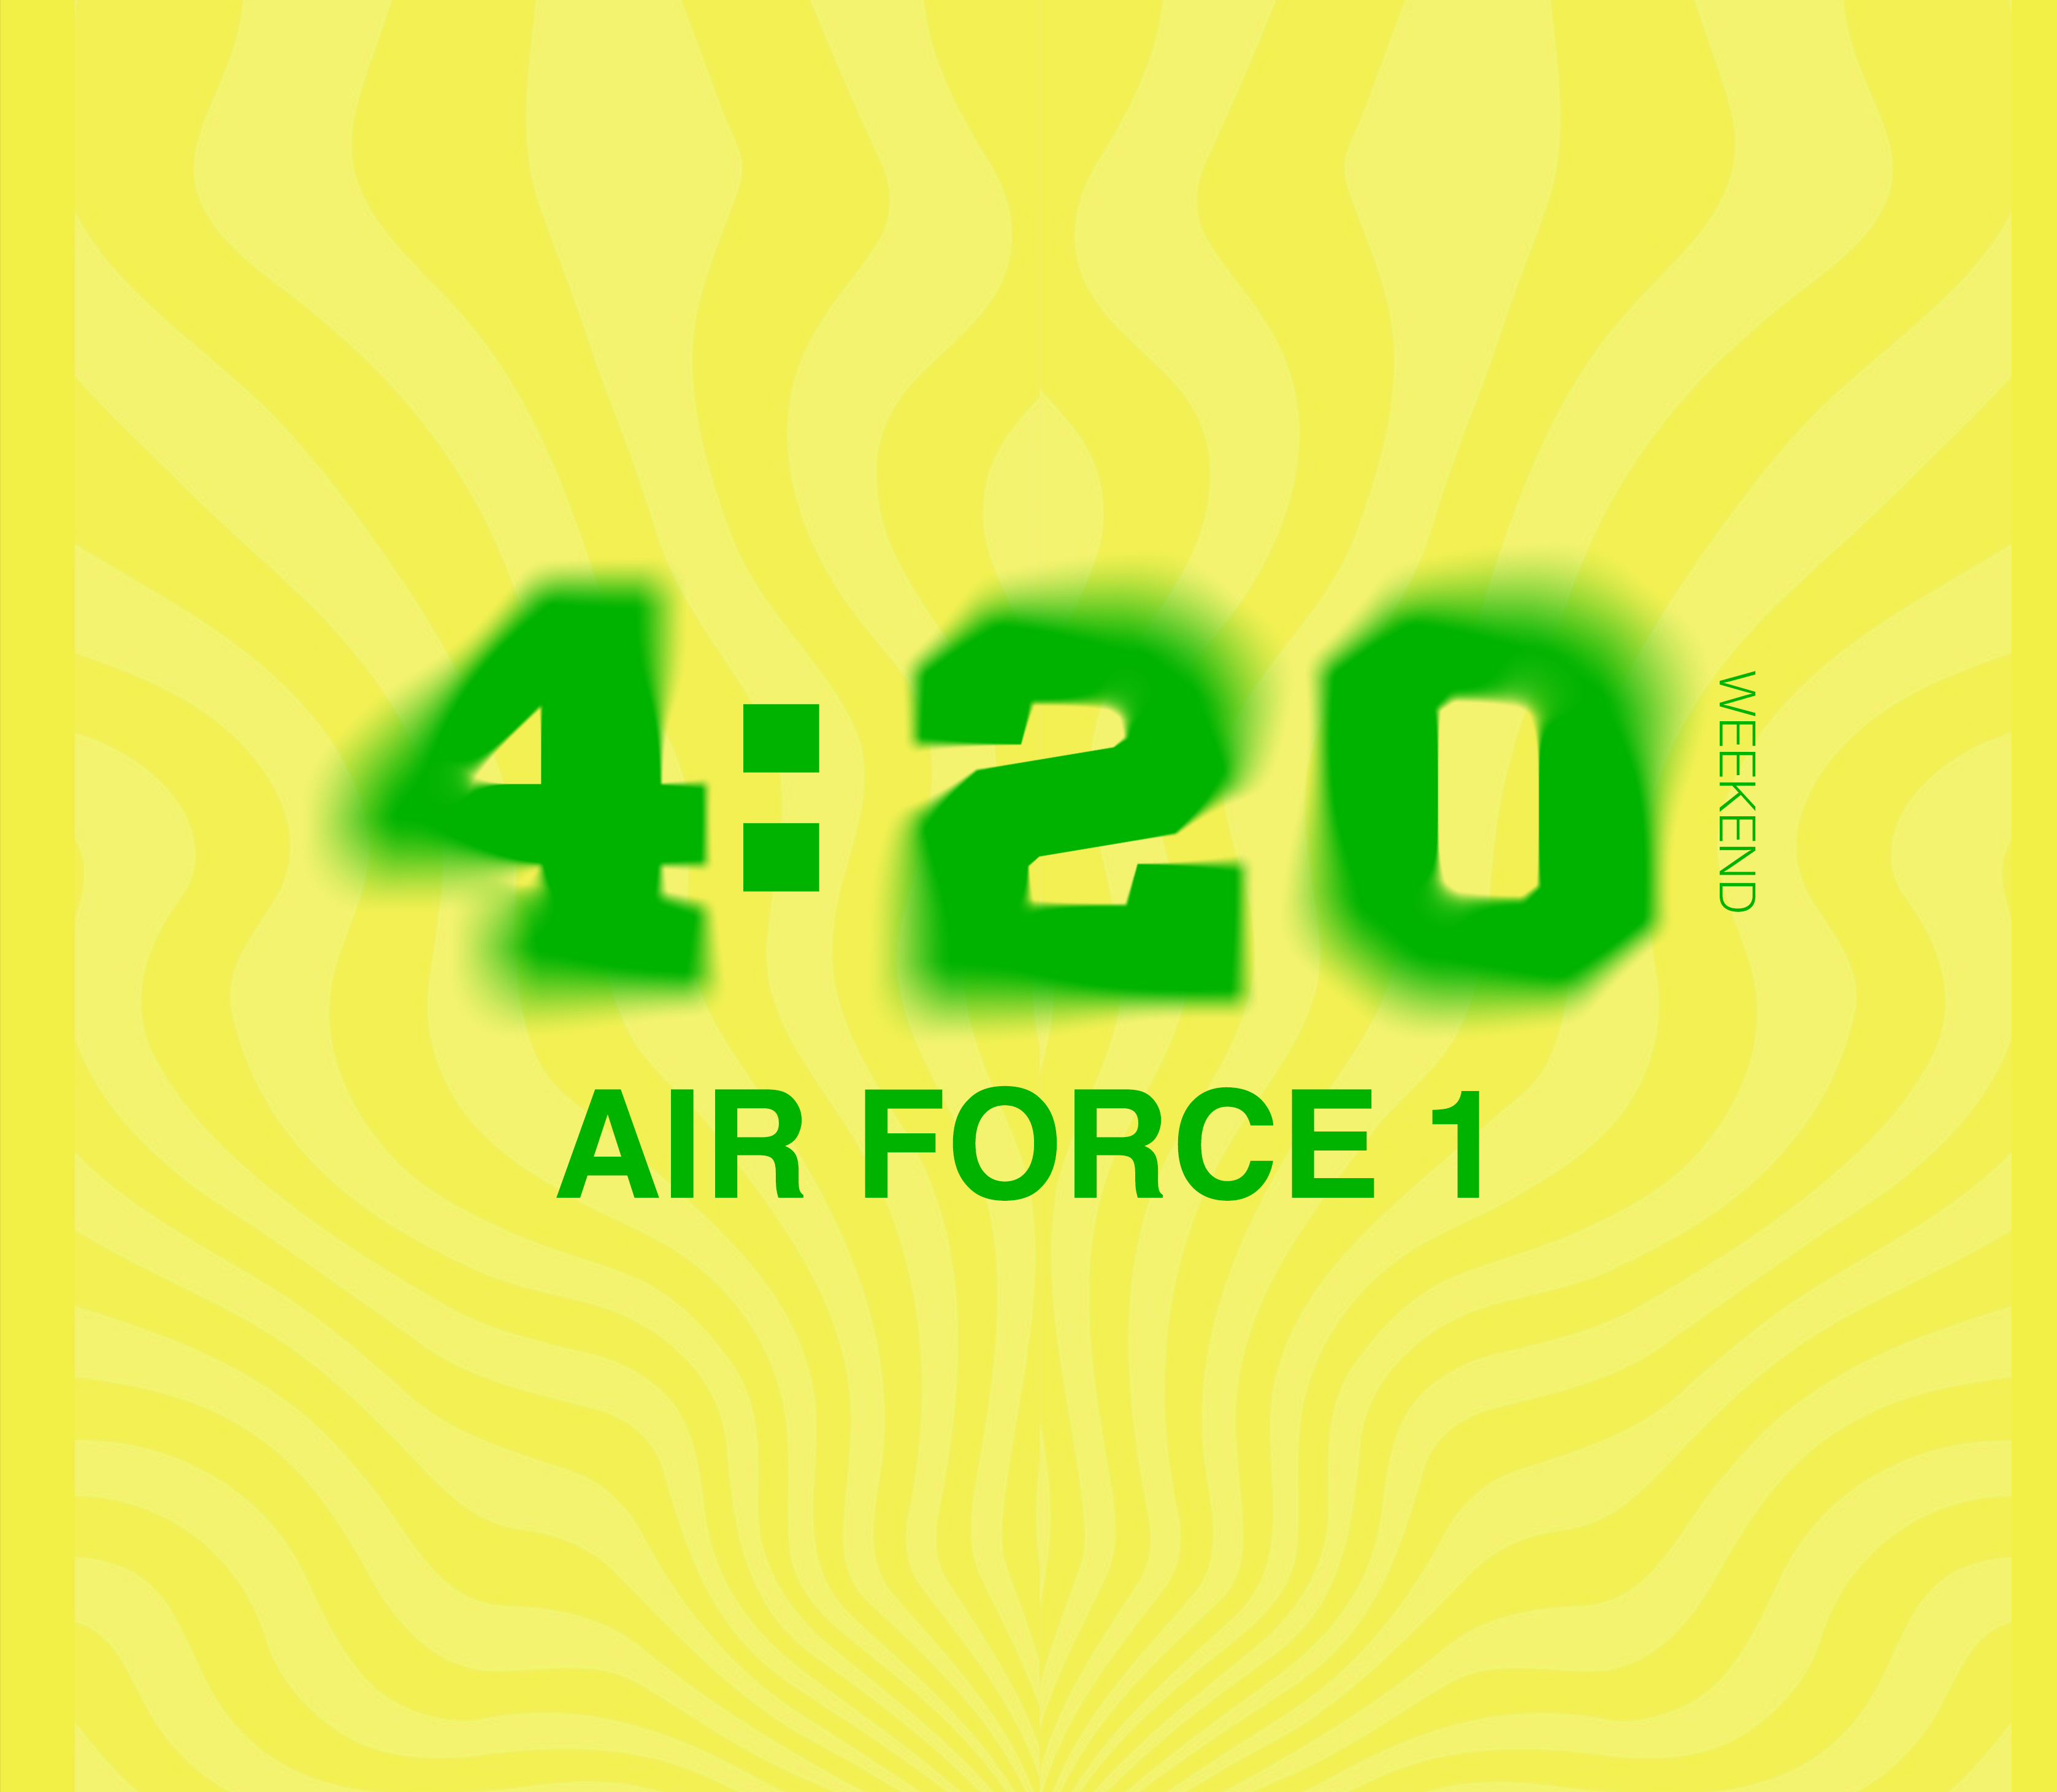 420 AIR FORCE 1